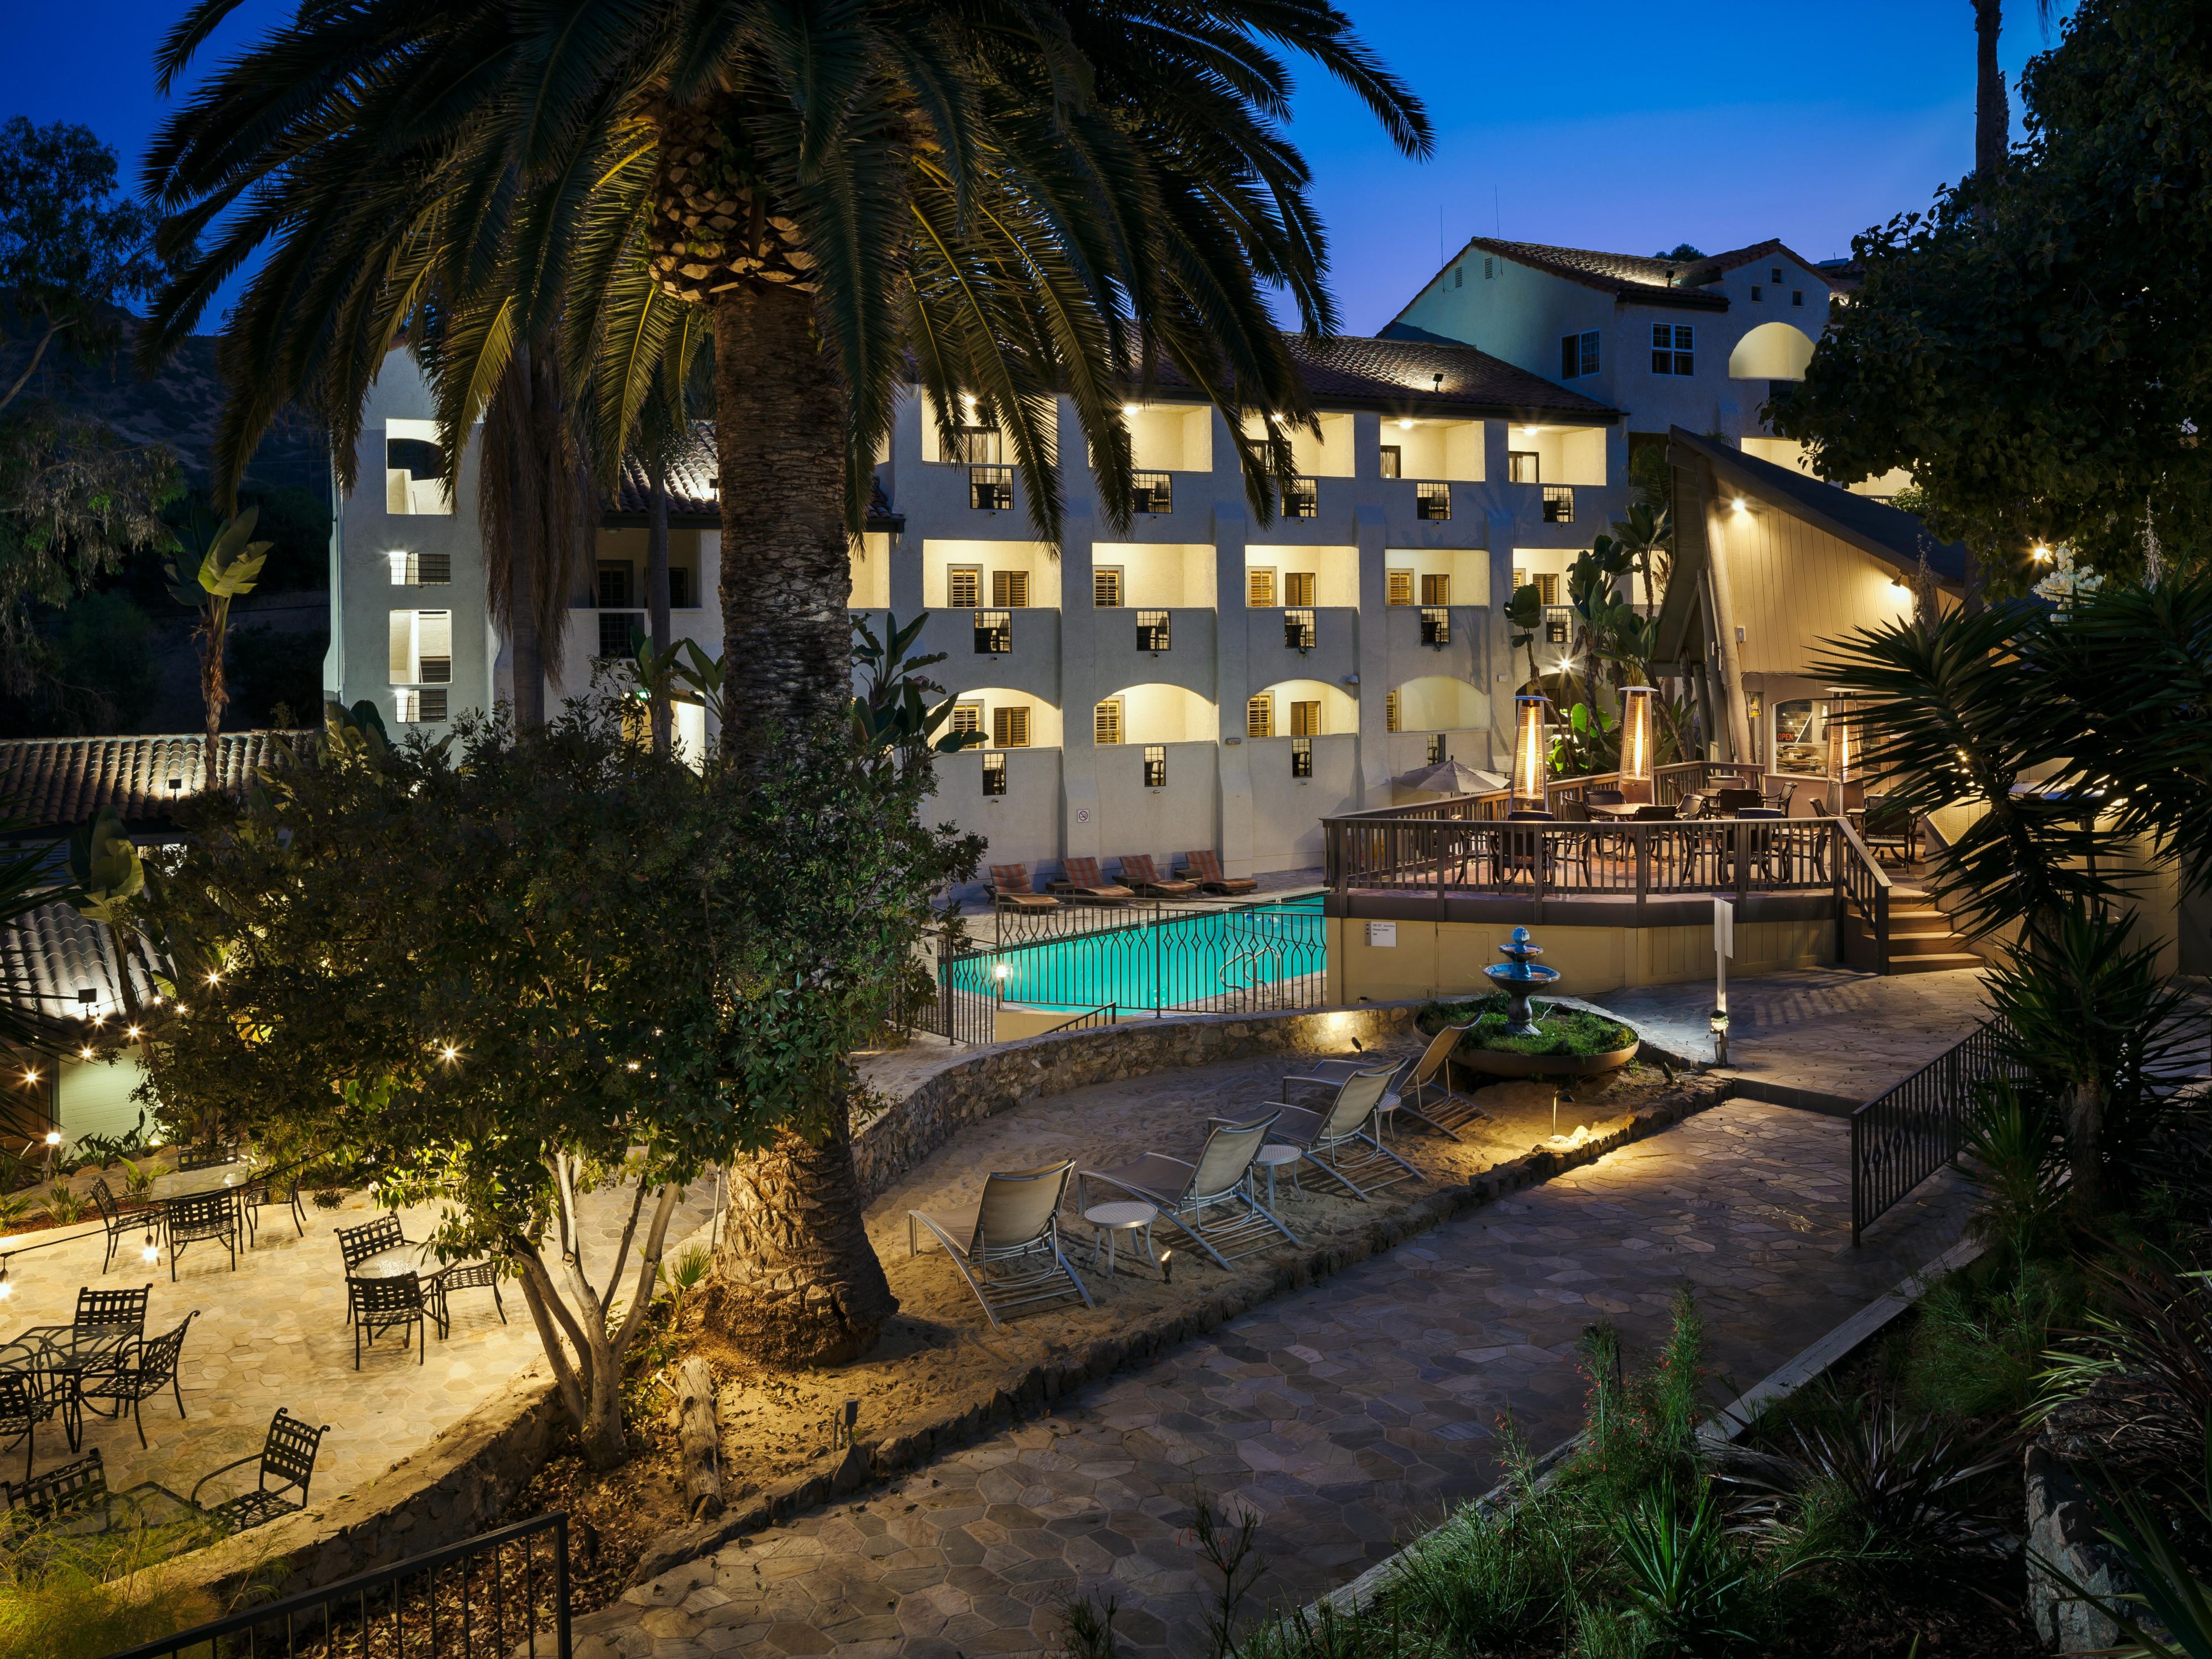 Catalina Island Hotels Avalon  Holiday Inn Resort   Catalina Island